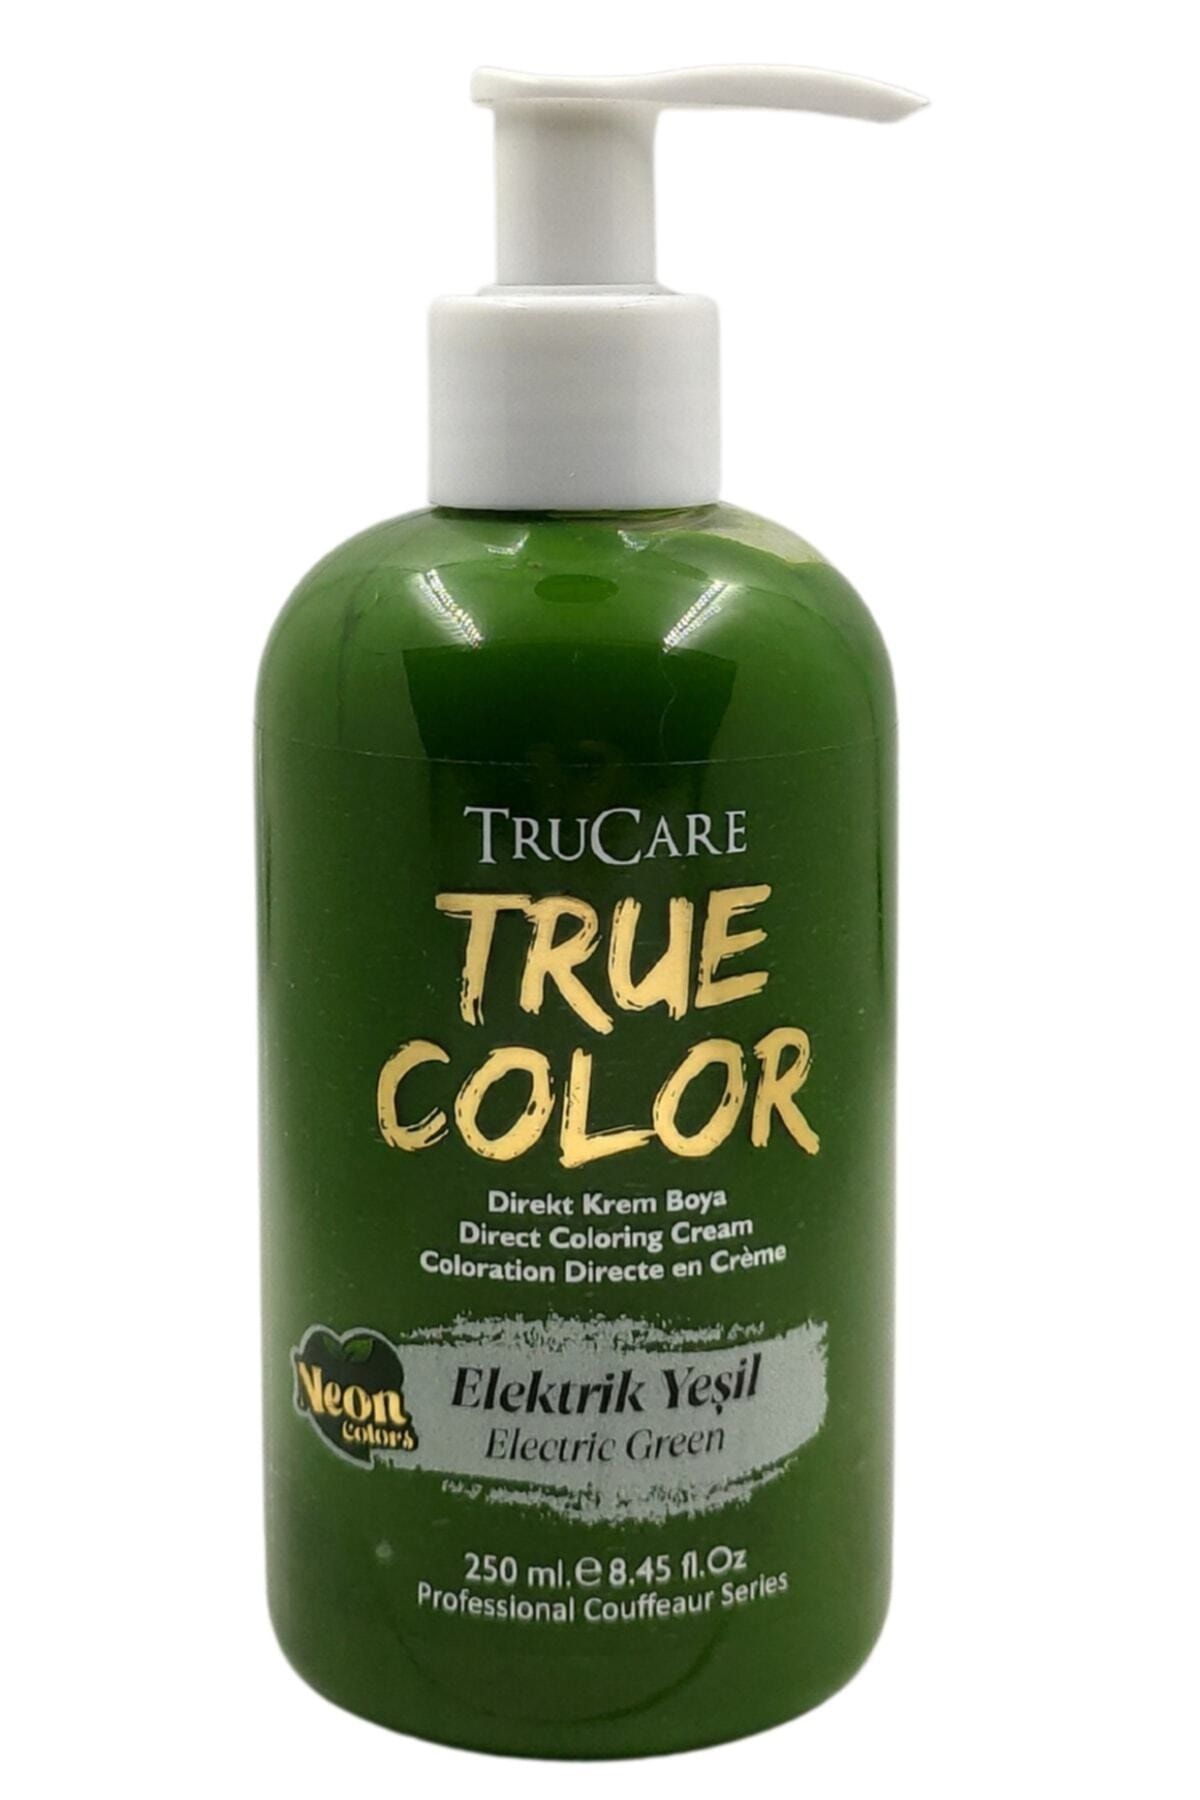 Trucare Truecolor Saç Boyası Neon Elektrik Yeşil 250 Ml